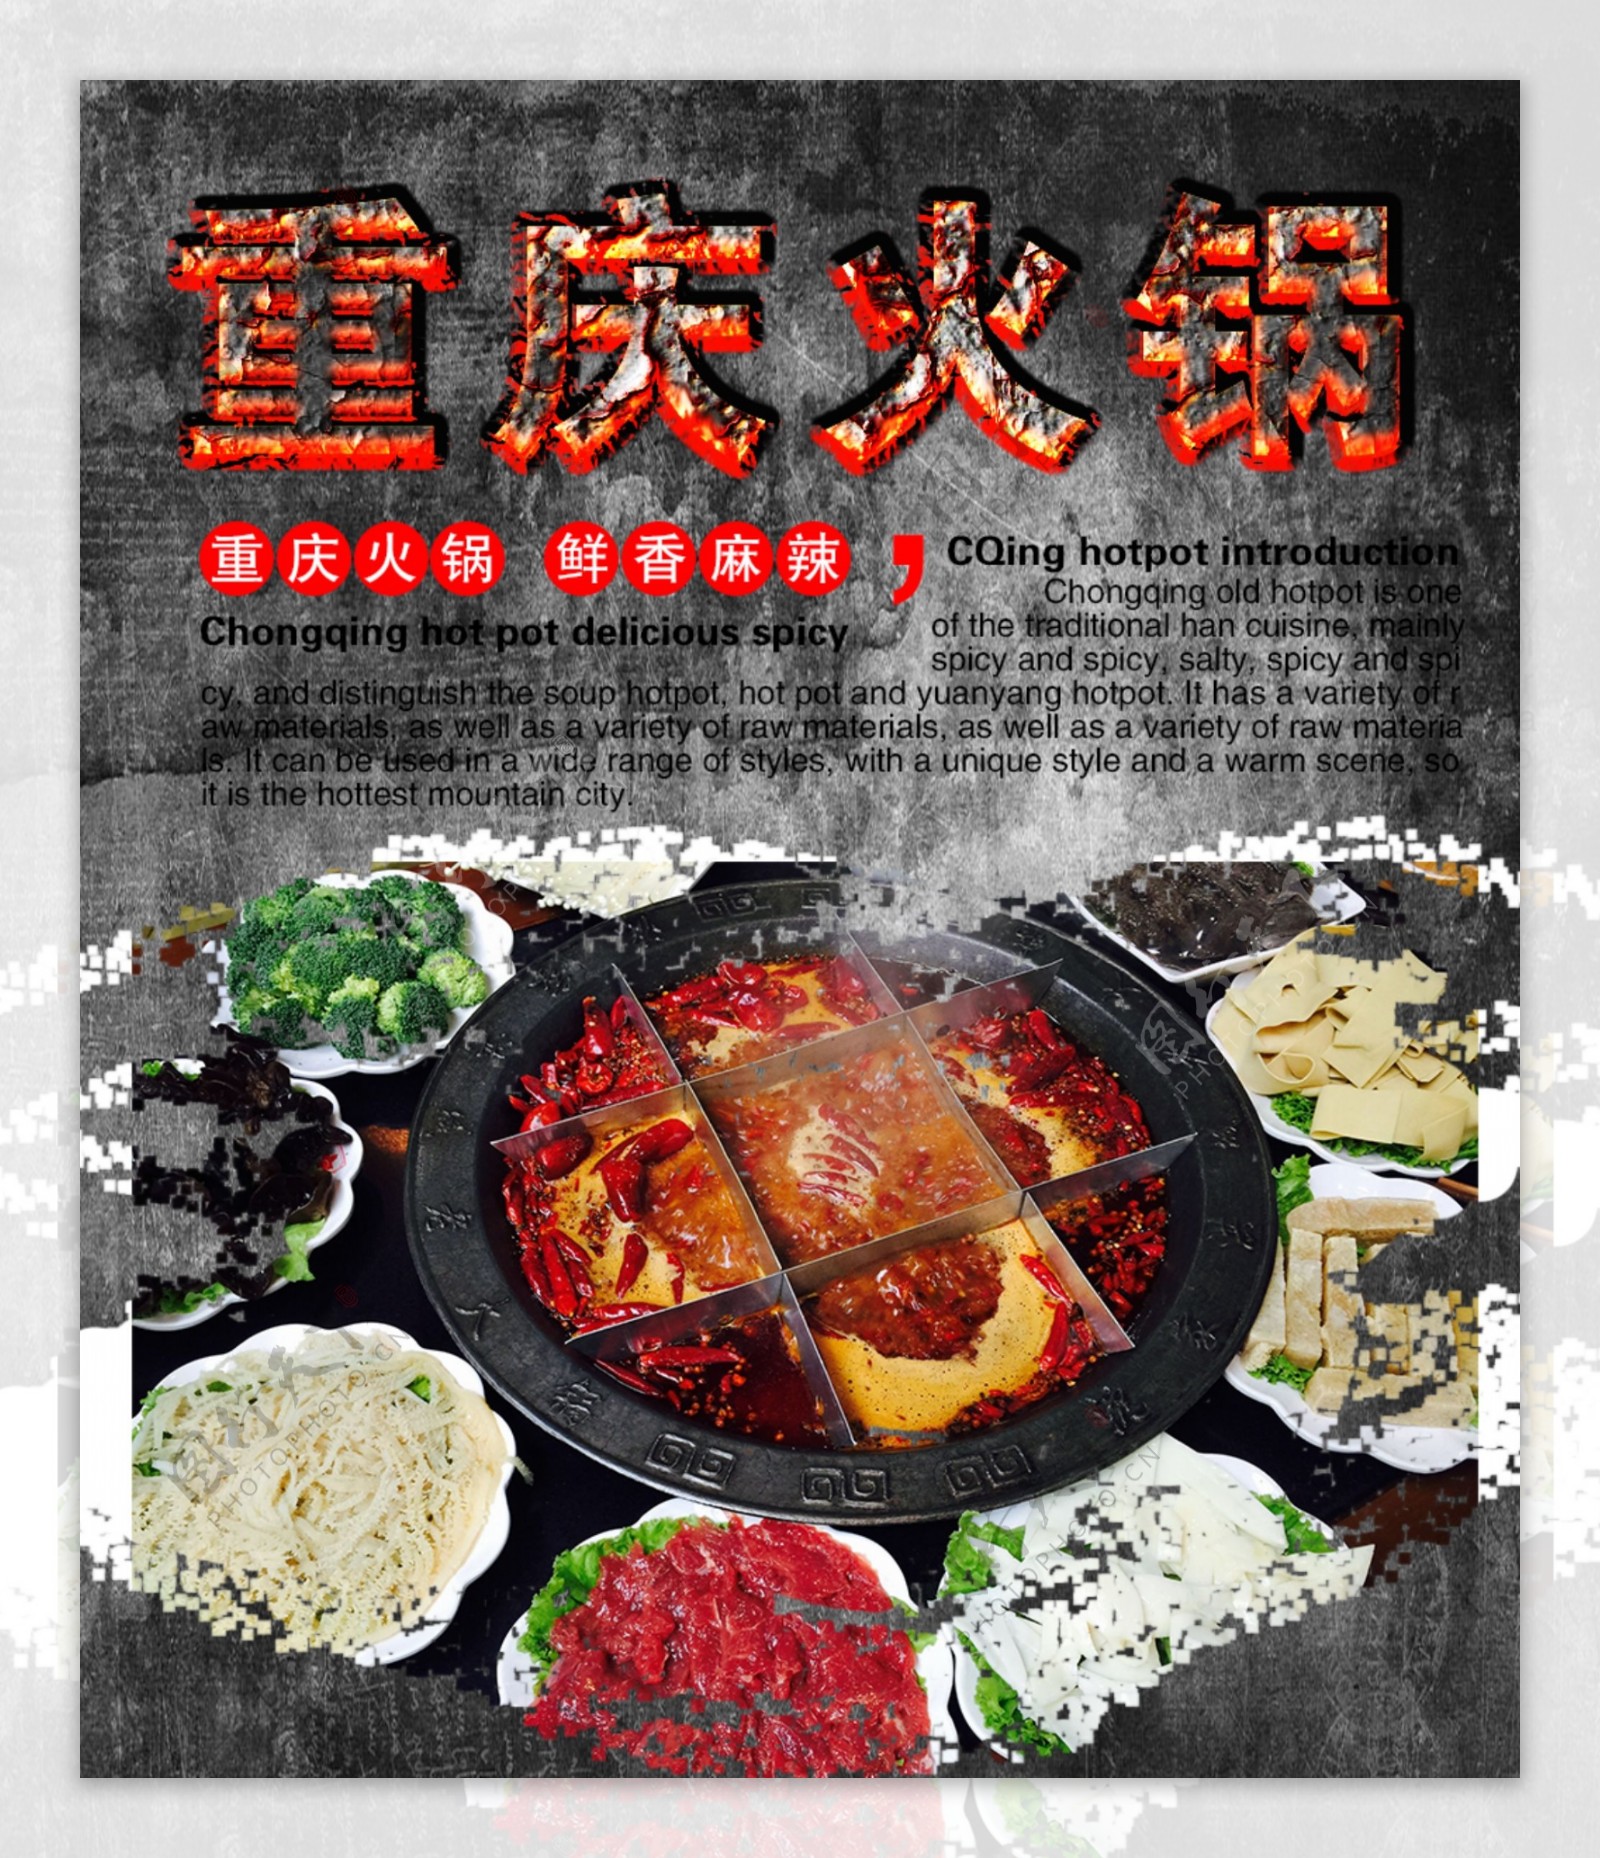 重庆火锅美食海报设计